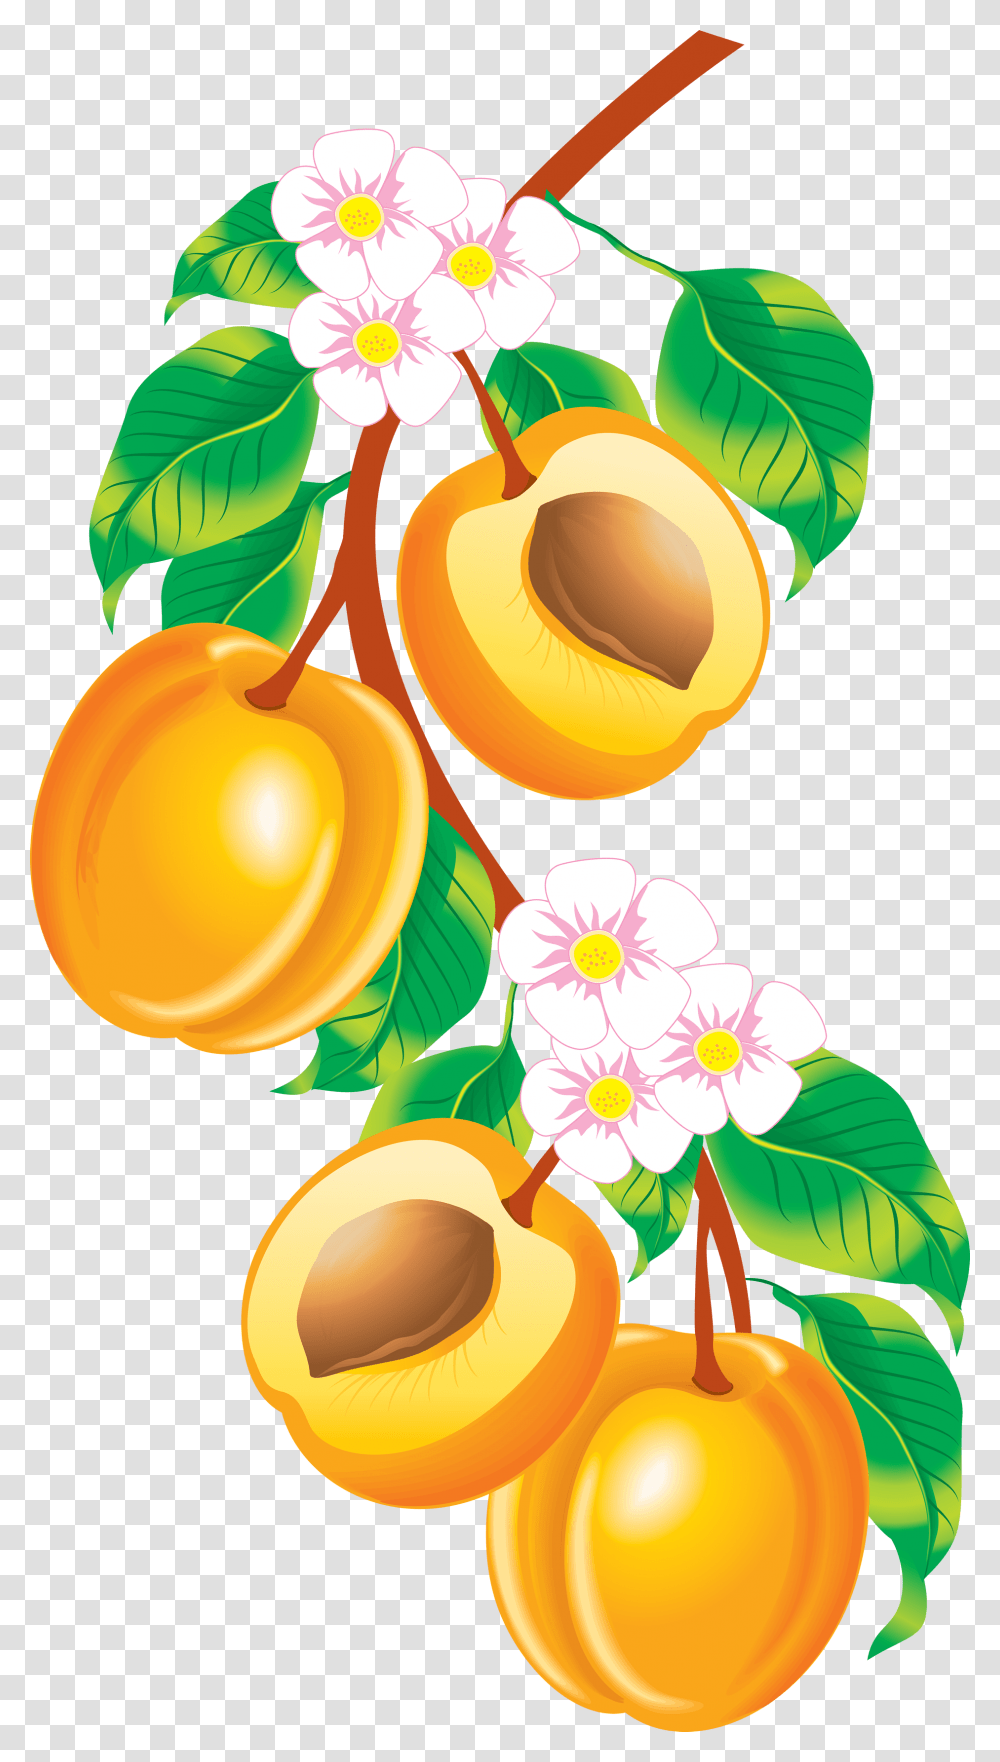 Peach Images Peaches Clipart, Plant, Apricot, Fruit, Produce Transparent Png